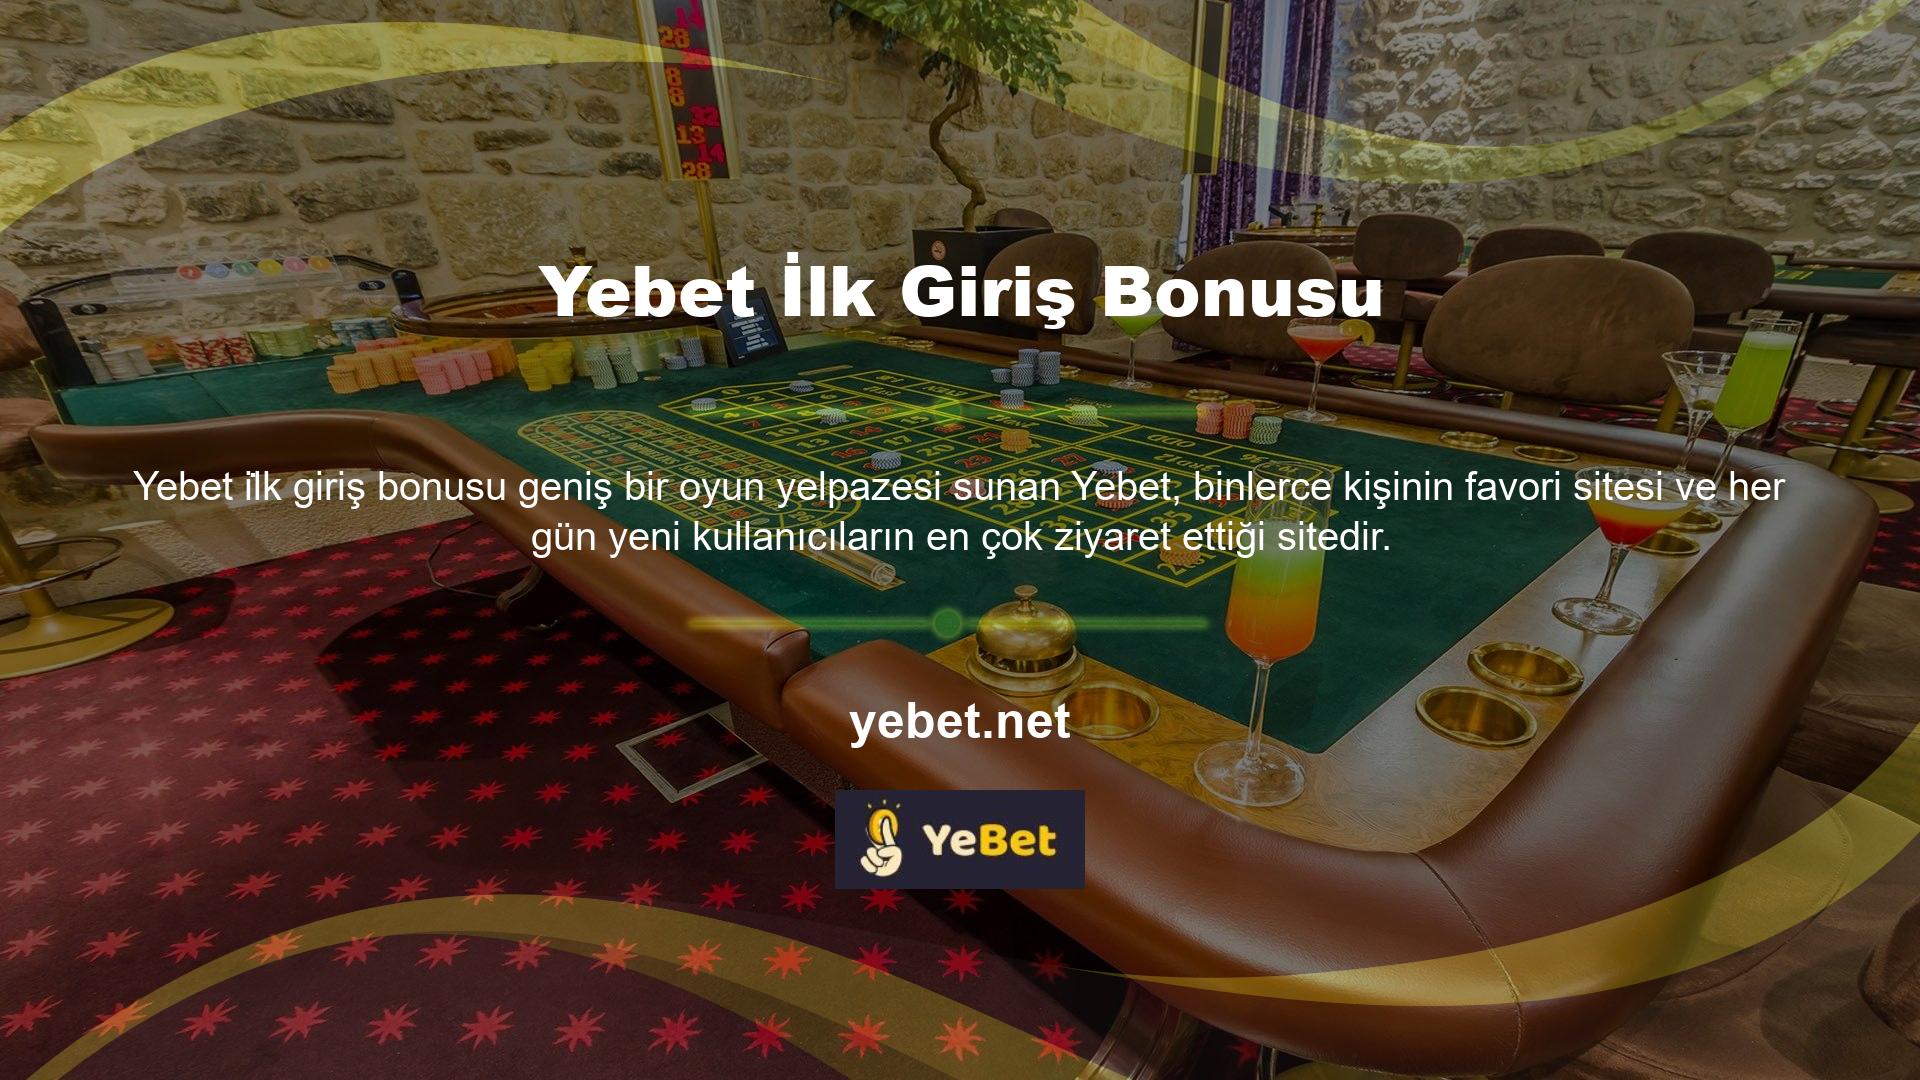 Casino oyunları ve bahis denilince akla gelen ilk yer olan Yebet, birçok aktiviteyi ve bonusu kullanıcılarıyla buluşturmuştur